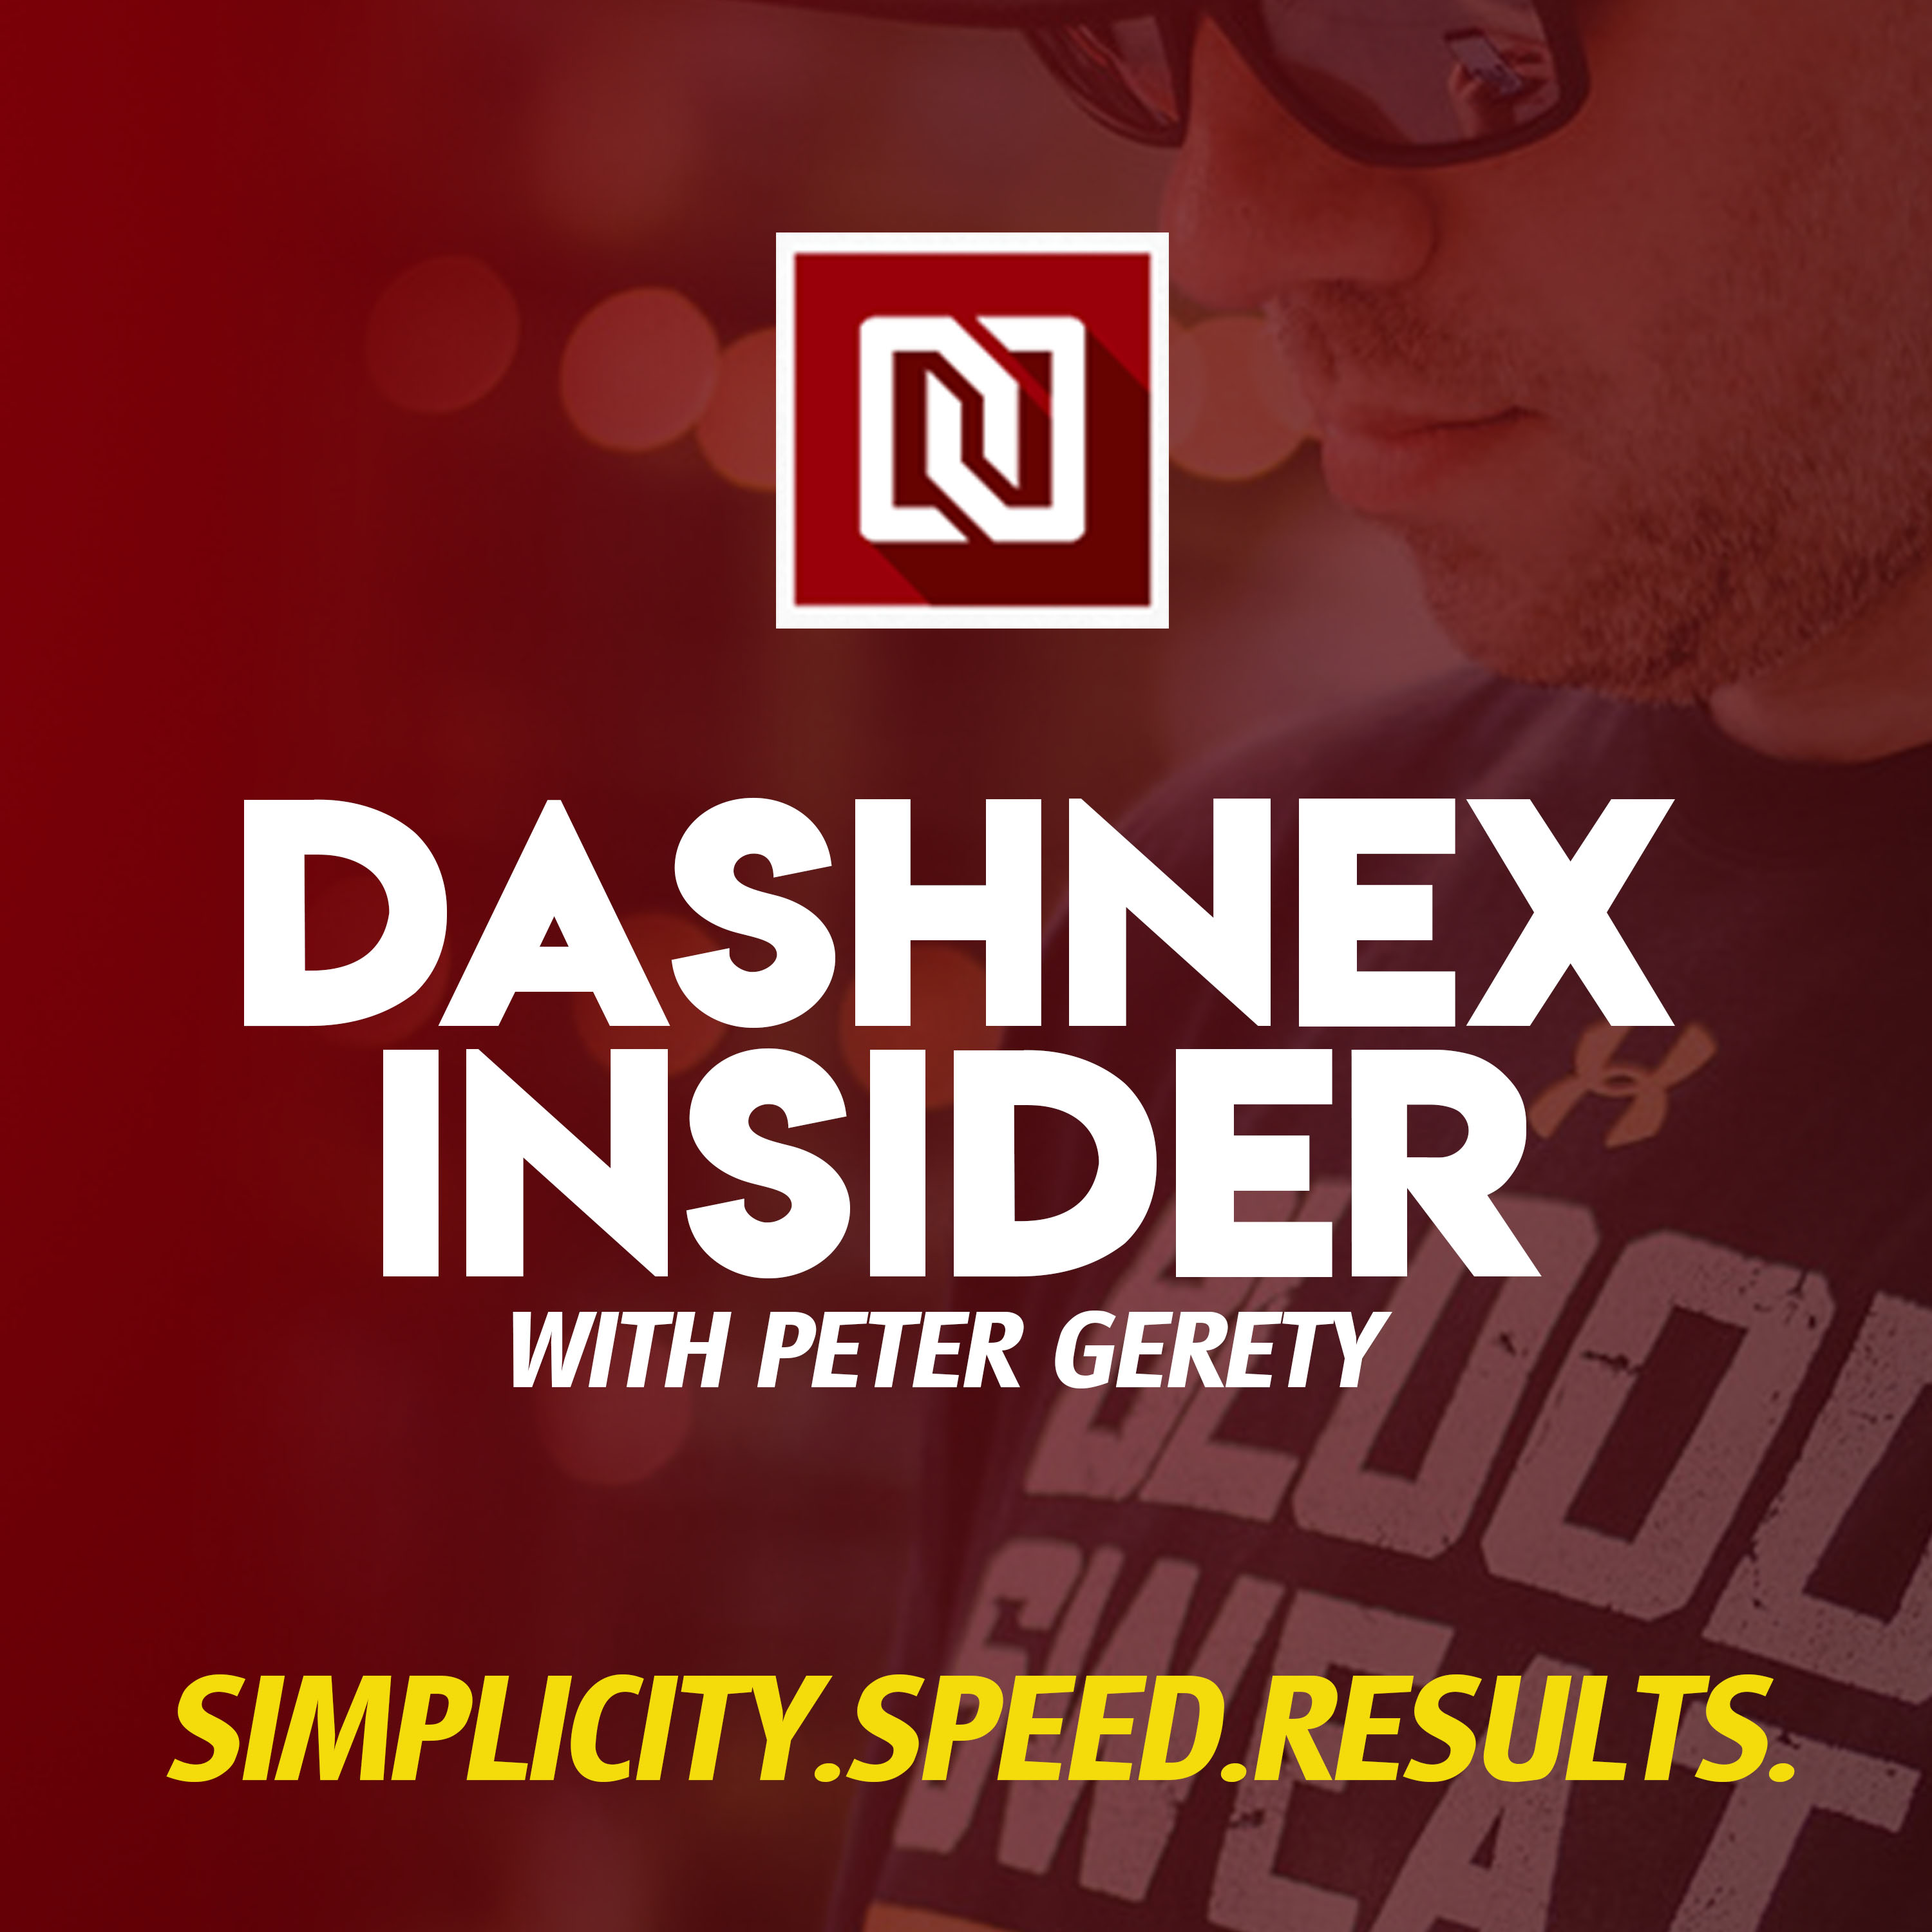 Dashnex Insider with Peter Garety